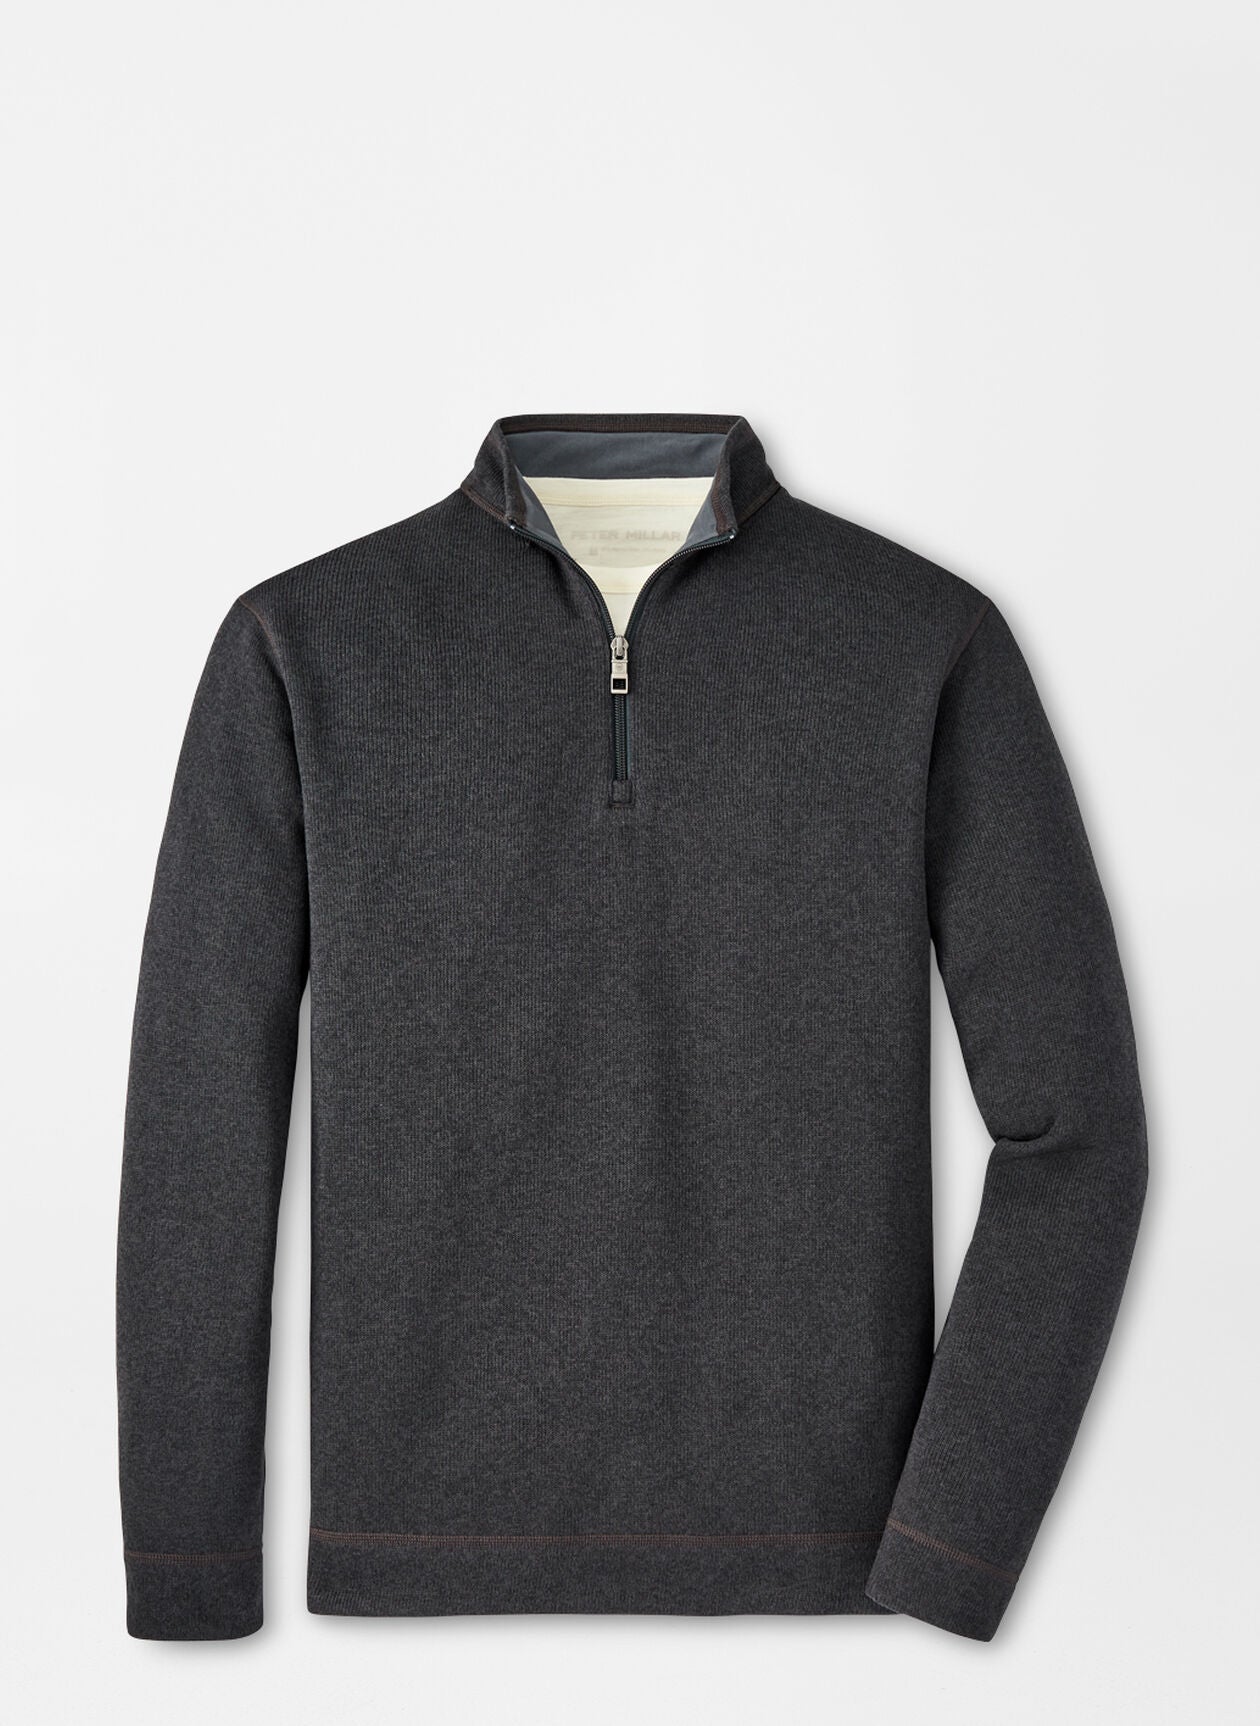 Peter Millar Crown Sweater Fleece Quarter-Zip (2 Colors)